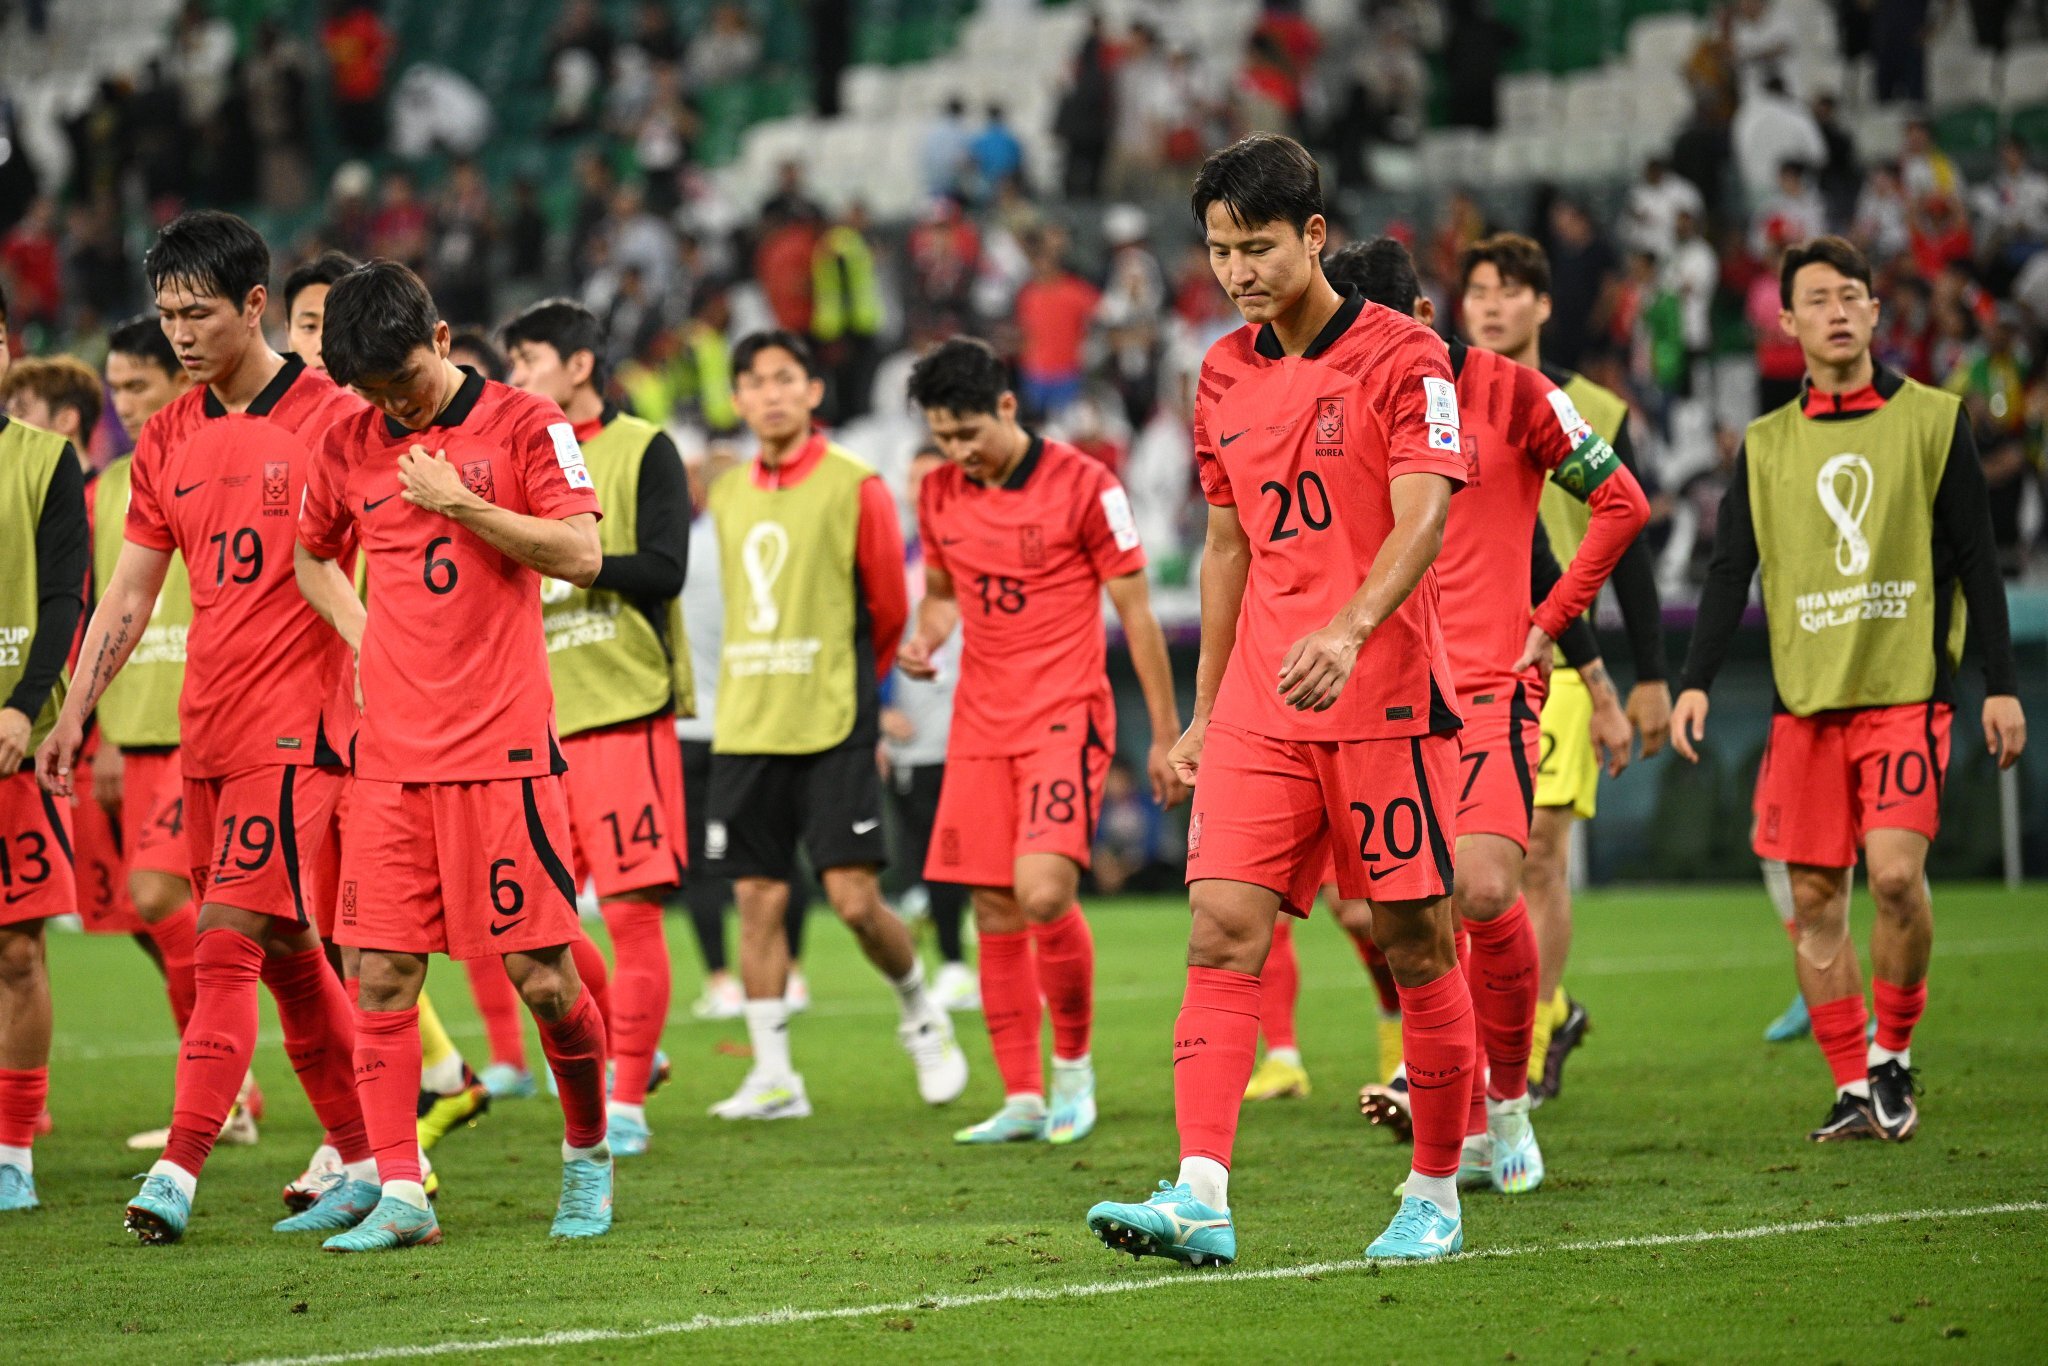 दक्षिण कोरिया से हार के बावजूद चीन की विश्व कप में खेलने की उम्मीदें कायम